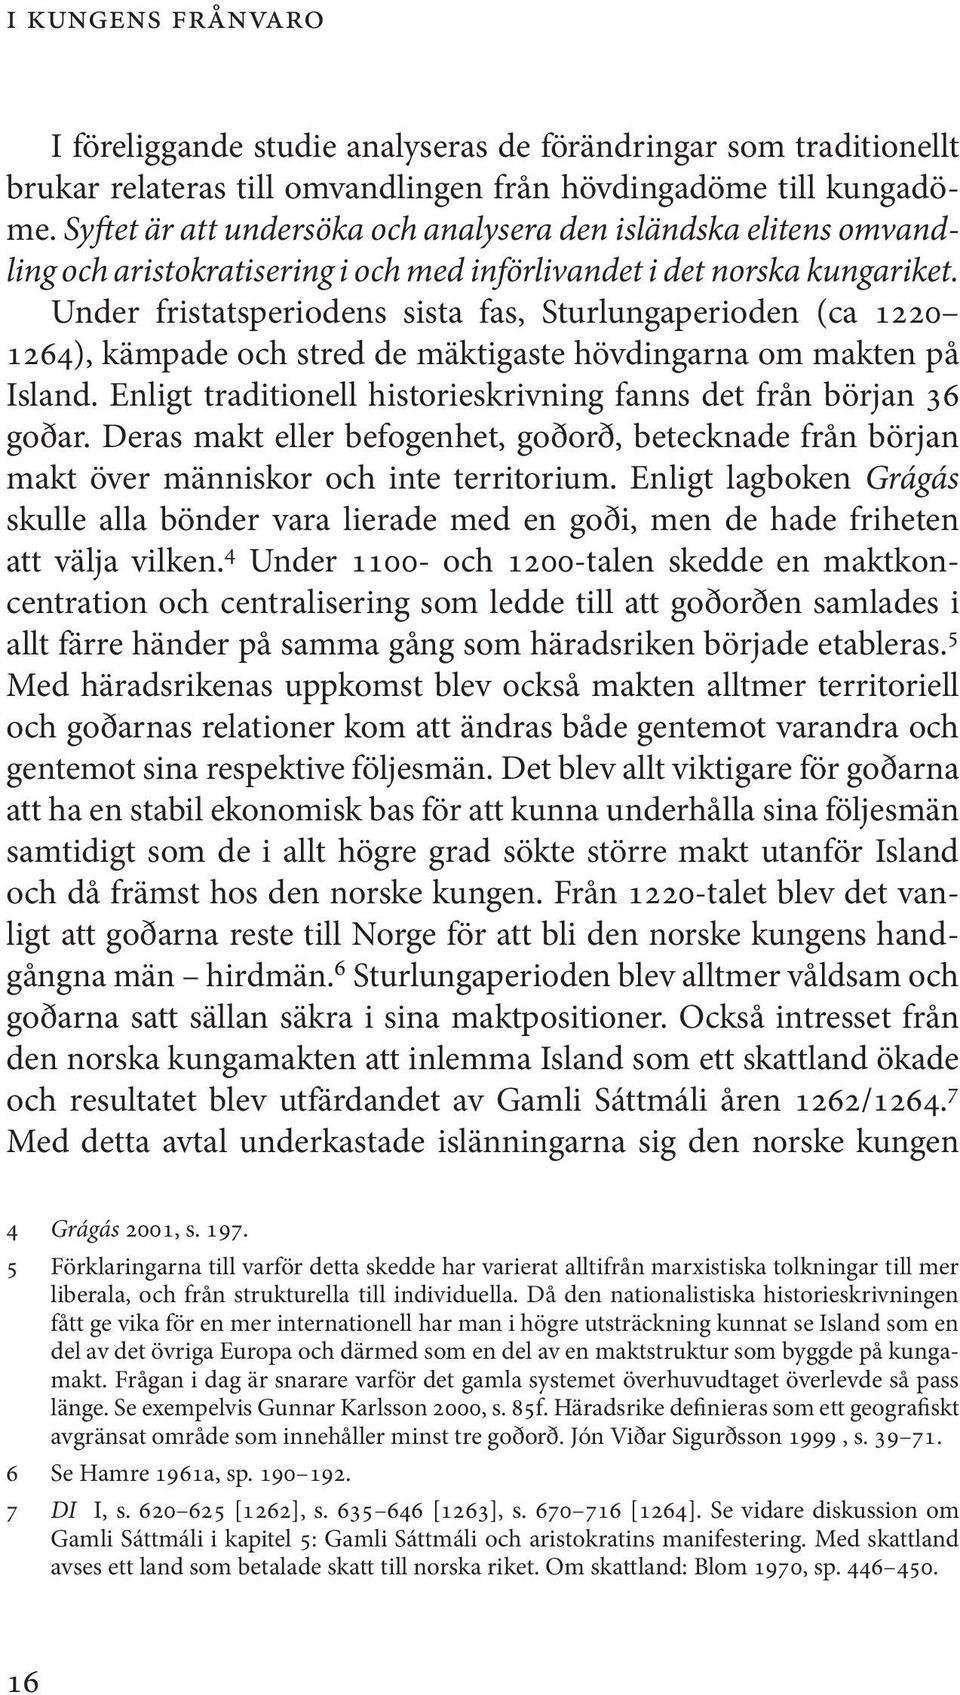 Under fristatsperiodens sista fas, Sturlungaperioden (ca 1220 1264), kämpade och stred de mäktigaste hövdingarna om makten på Island.